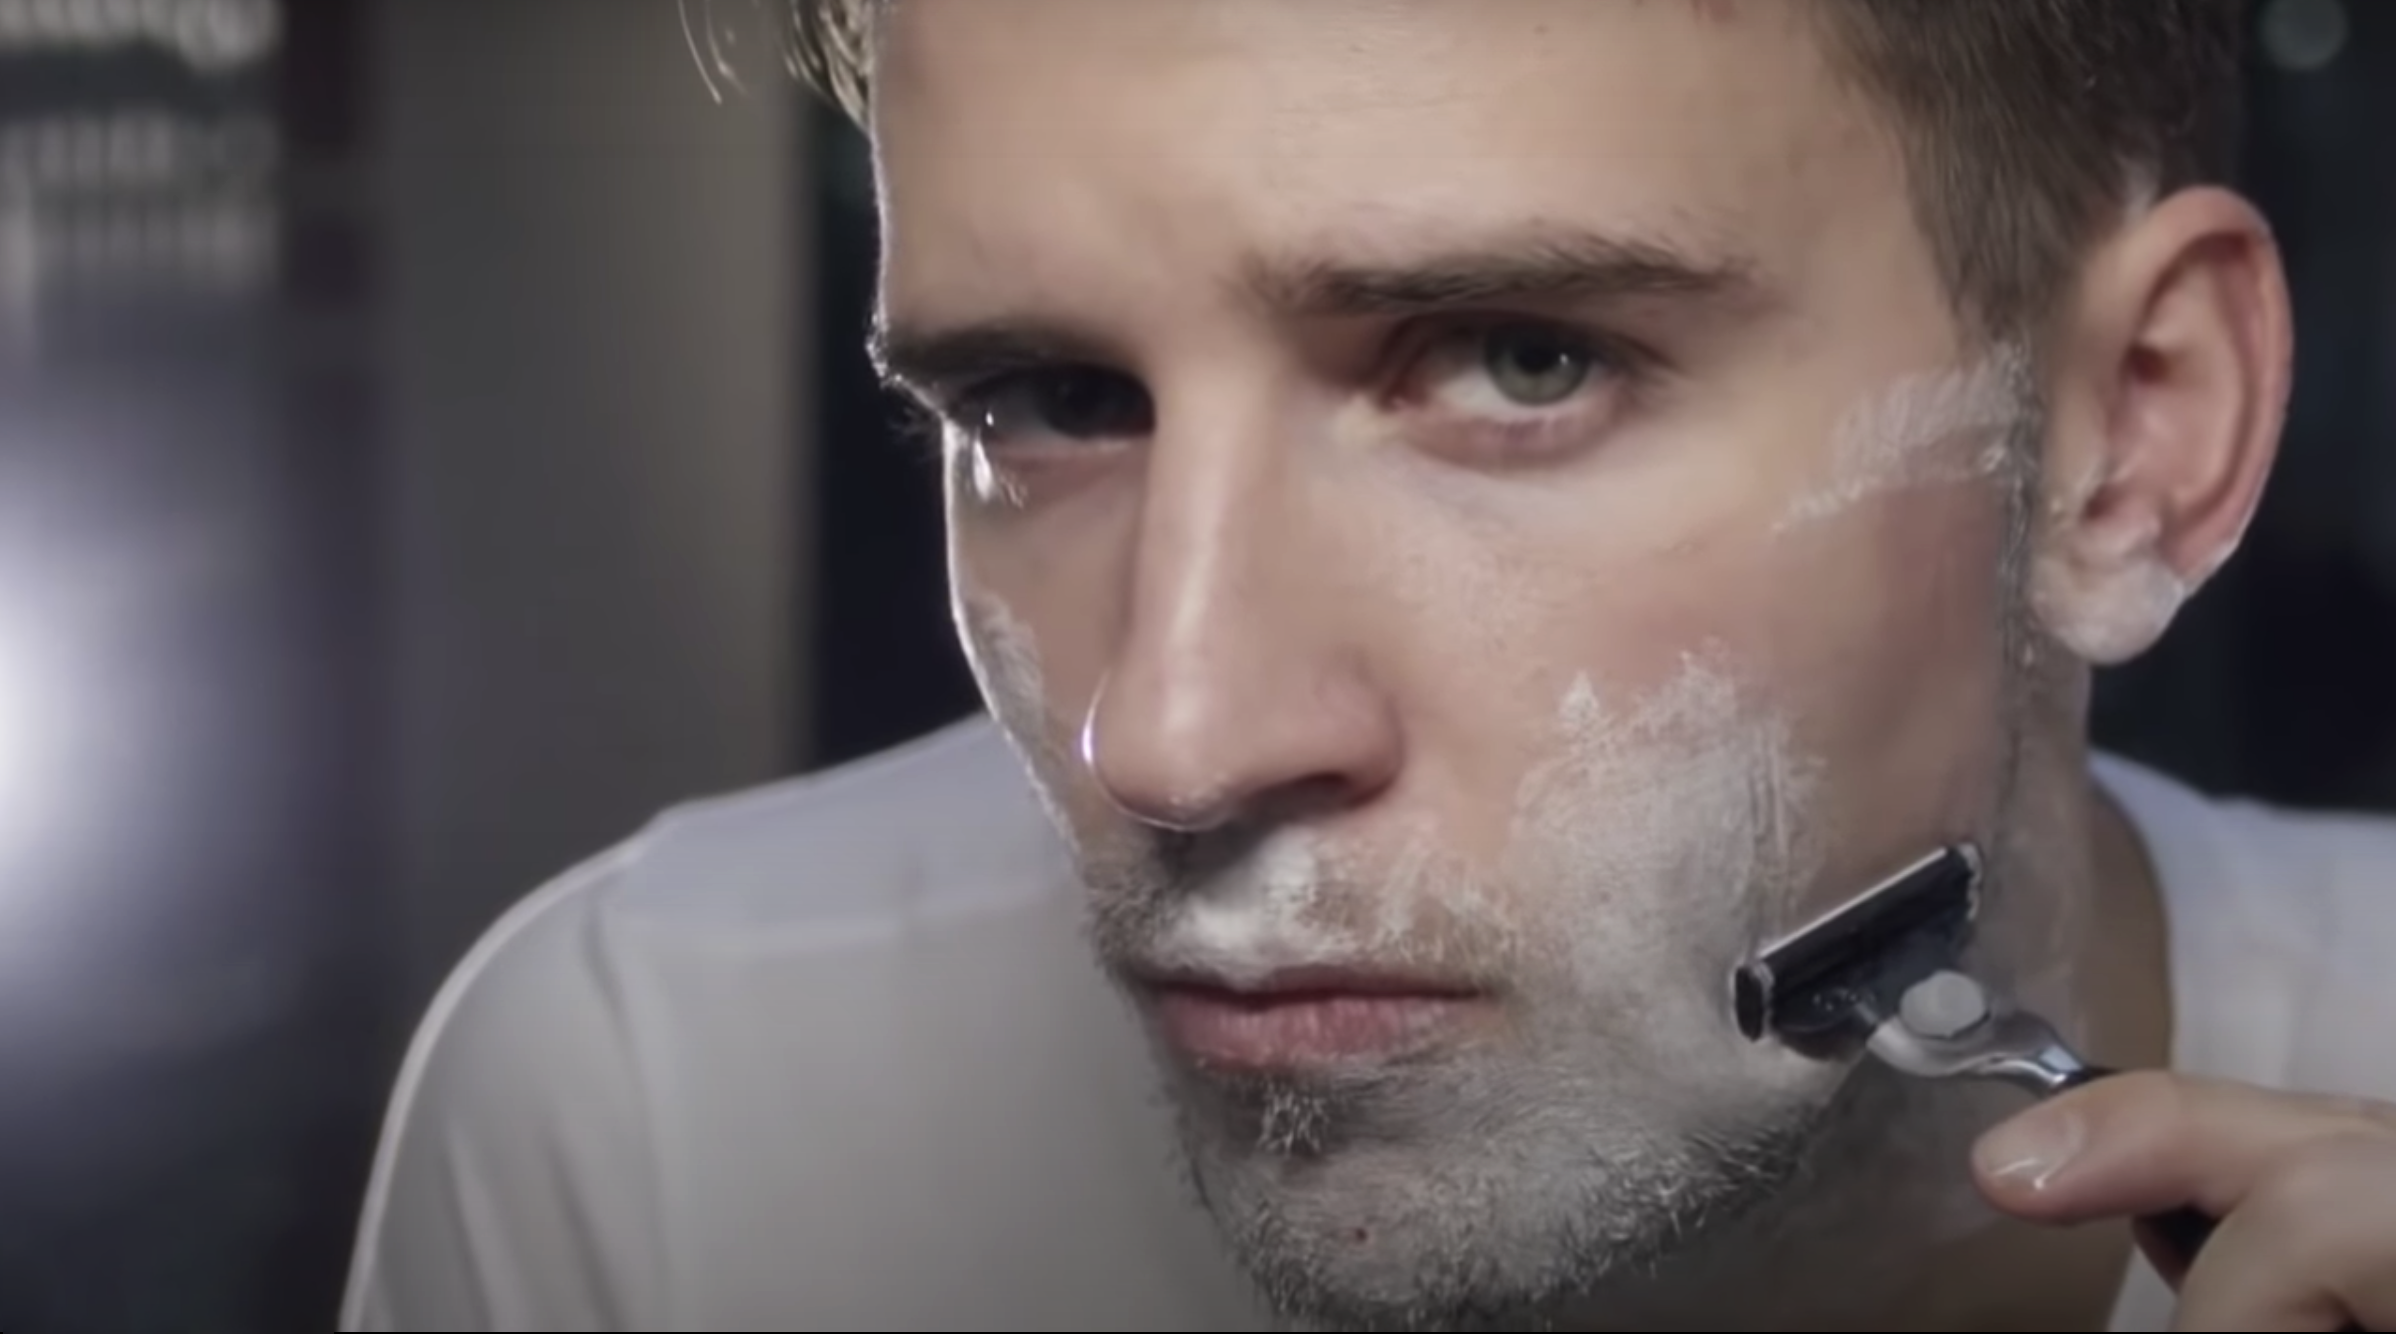 Man shaving face with Czech & Speake razor